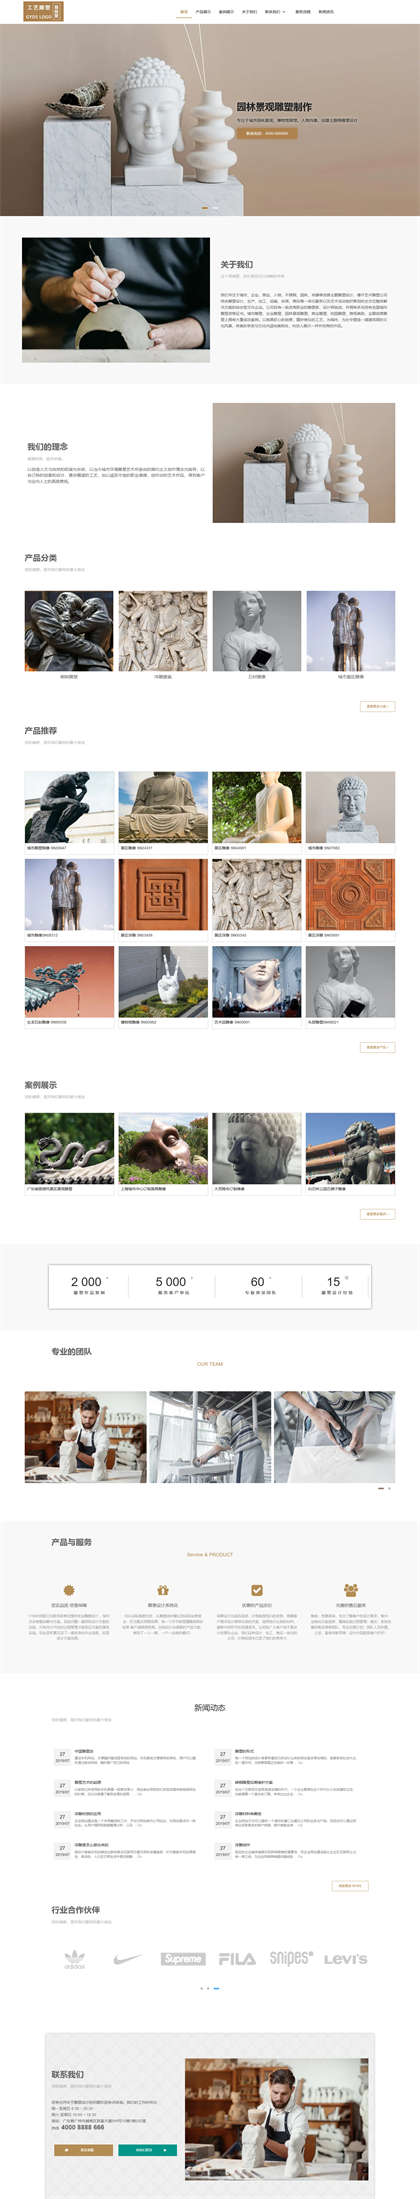 雕塑设计-工艺雕塑-人像雕塑-工艺品制作网站模板网站模板预览图片